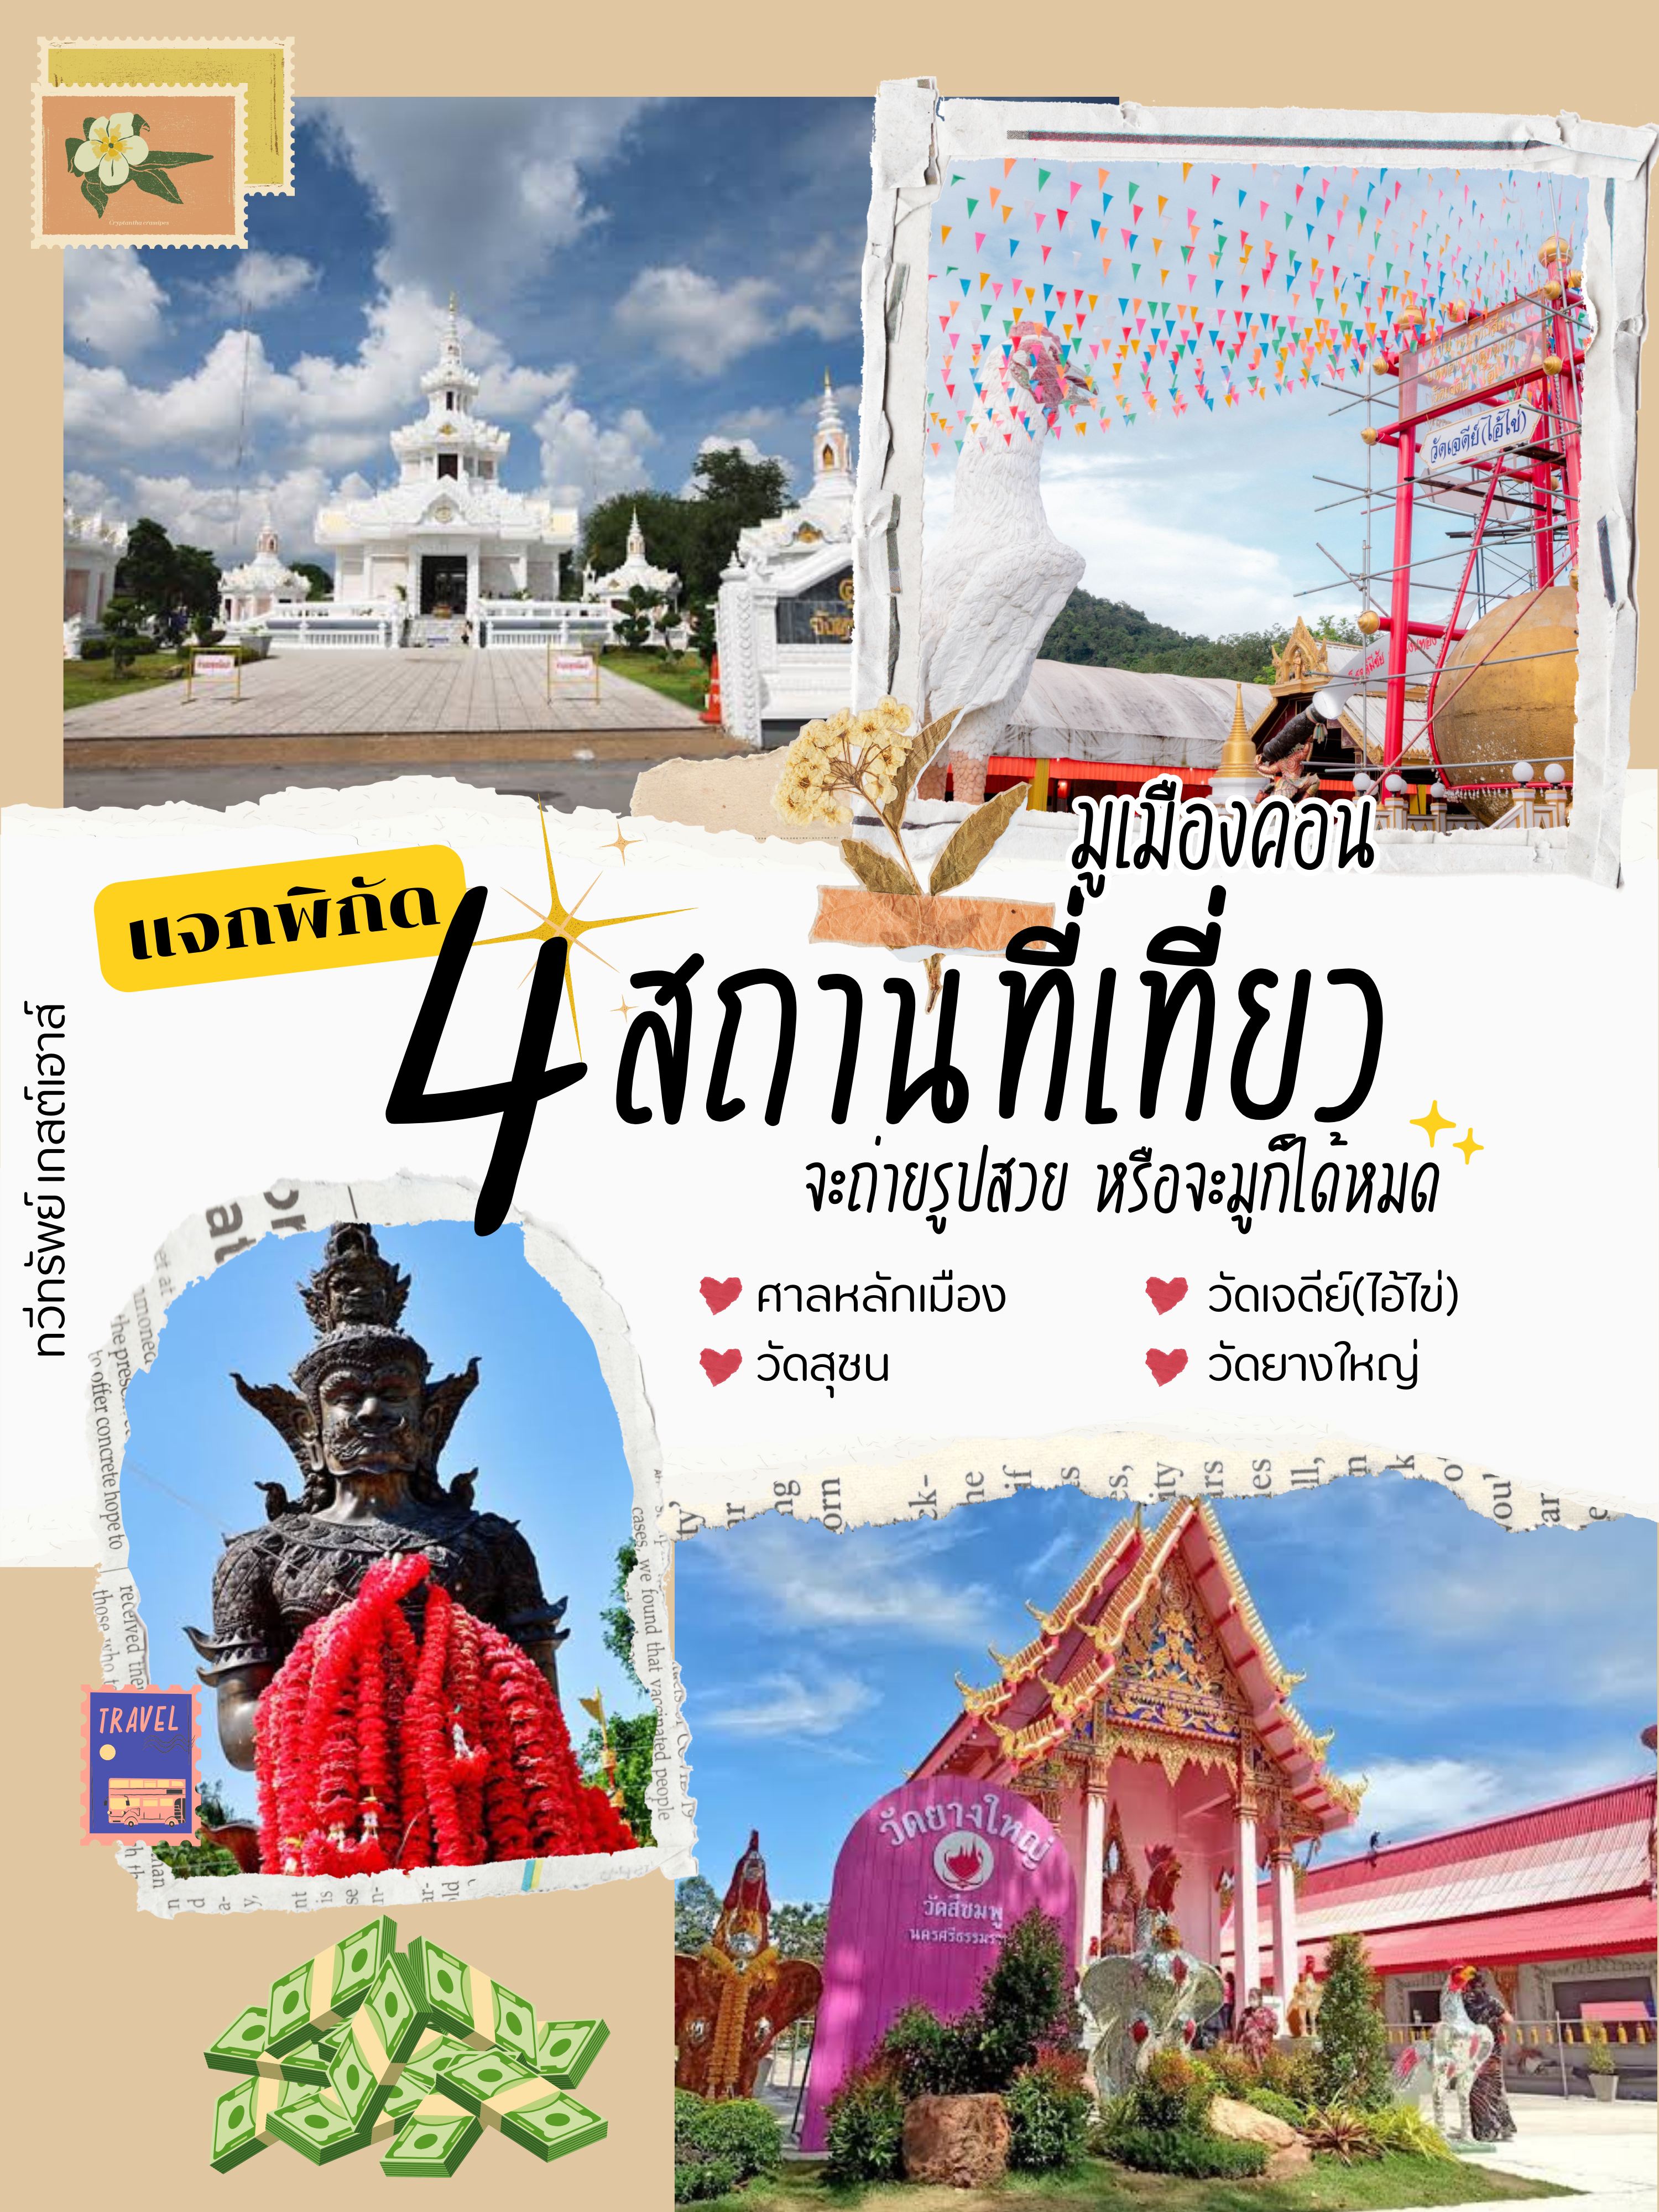 预订去Mu Muang Khon 的航班票一日游✈️💸